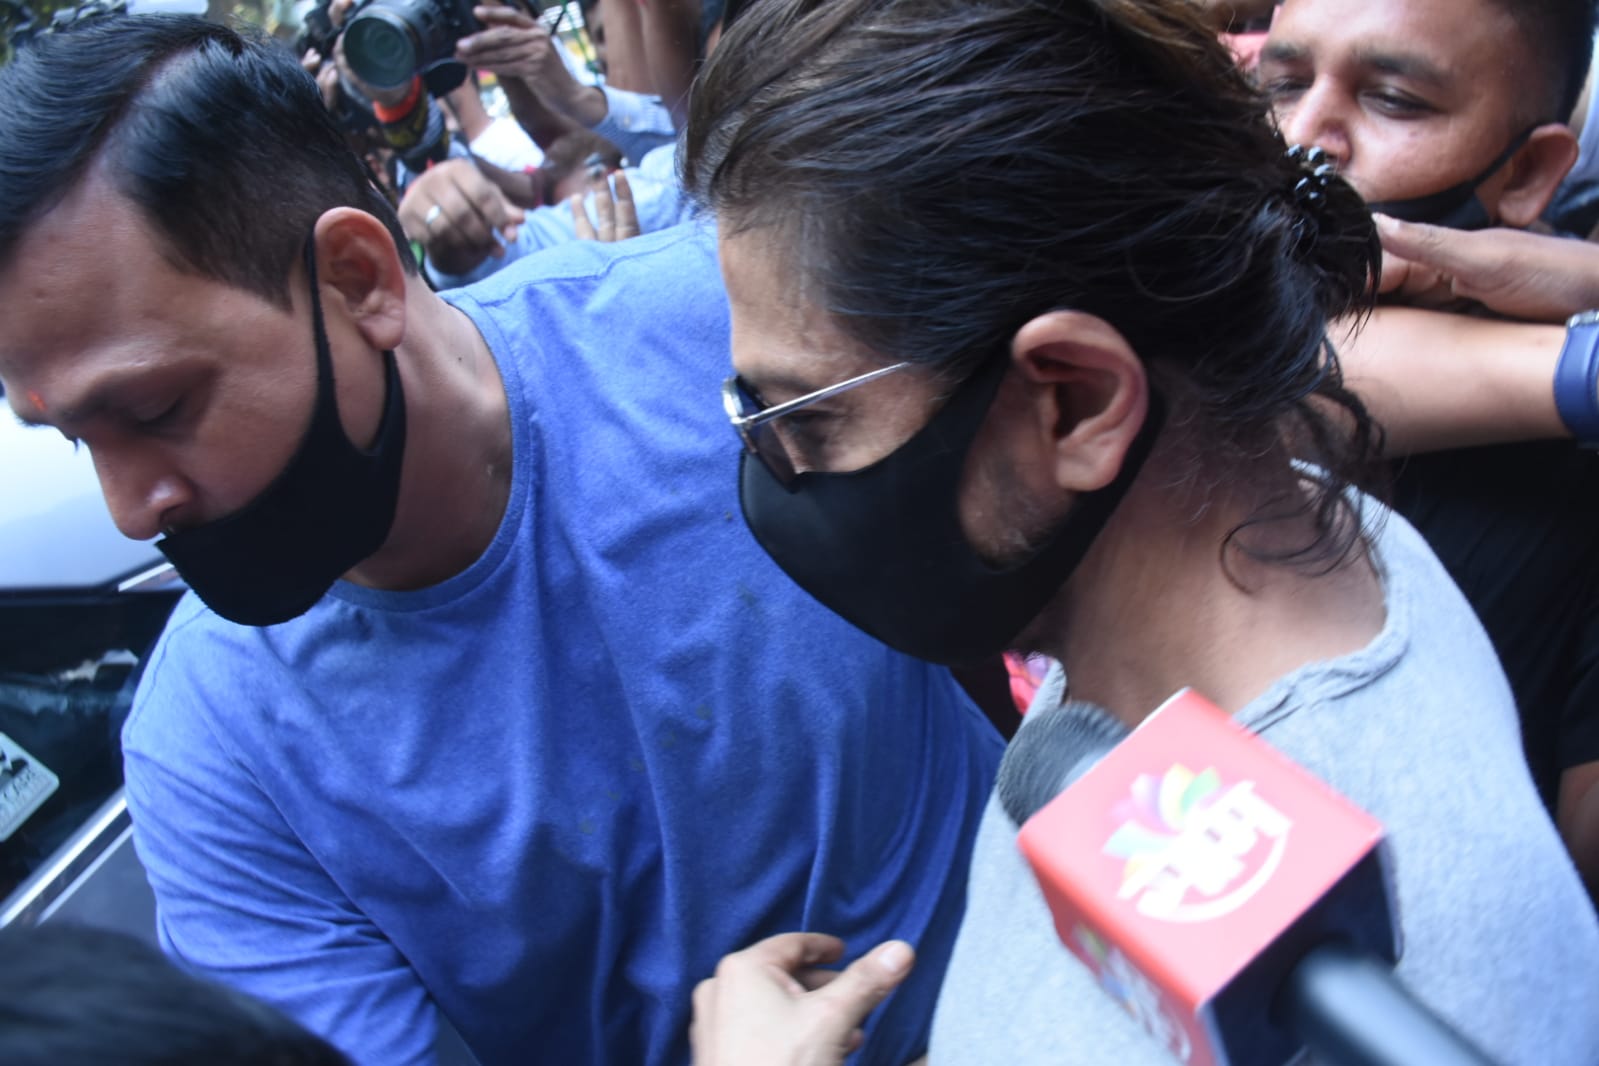 देखें: शाहरुख खान ने बेटे आर्यन खान से मिलने के बाद आर्थर रोड जेल के बाहर हाथ जोड़कर लोगों का अभिवादन किया